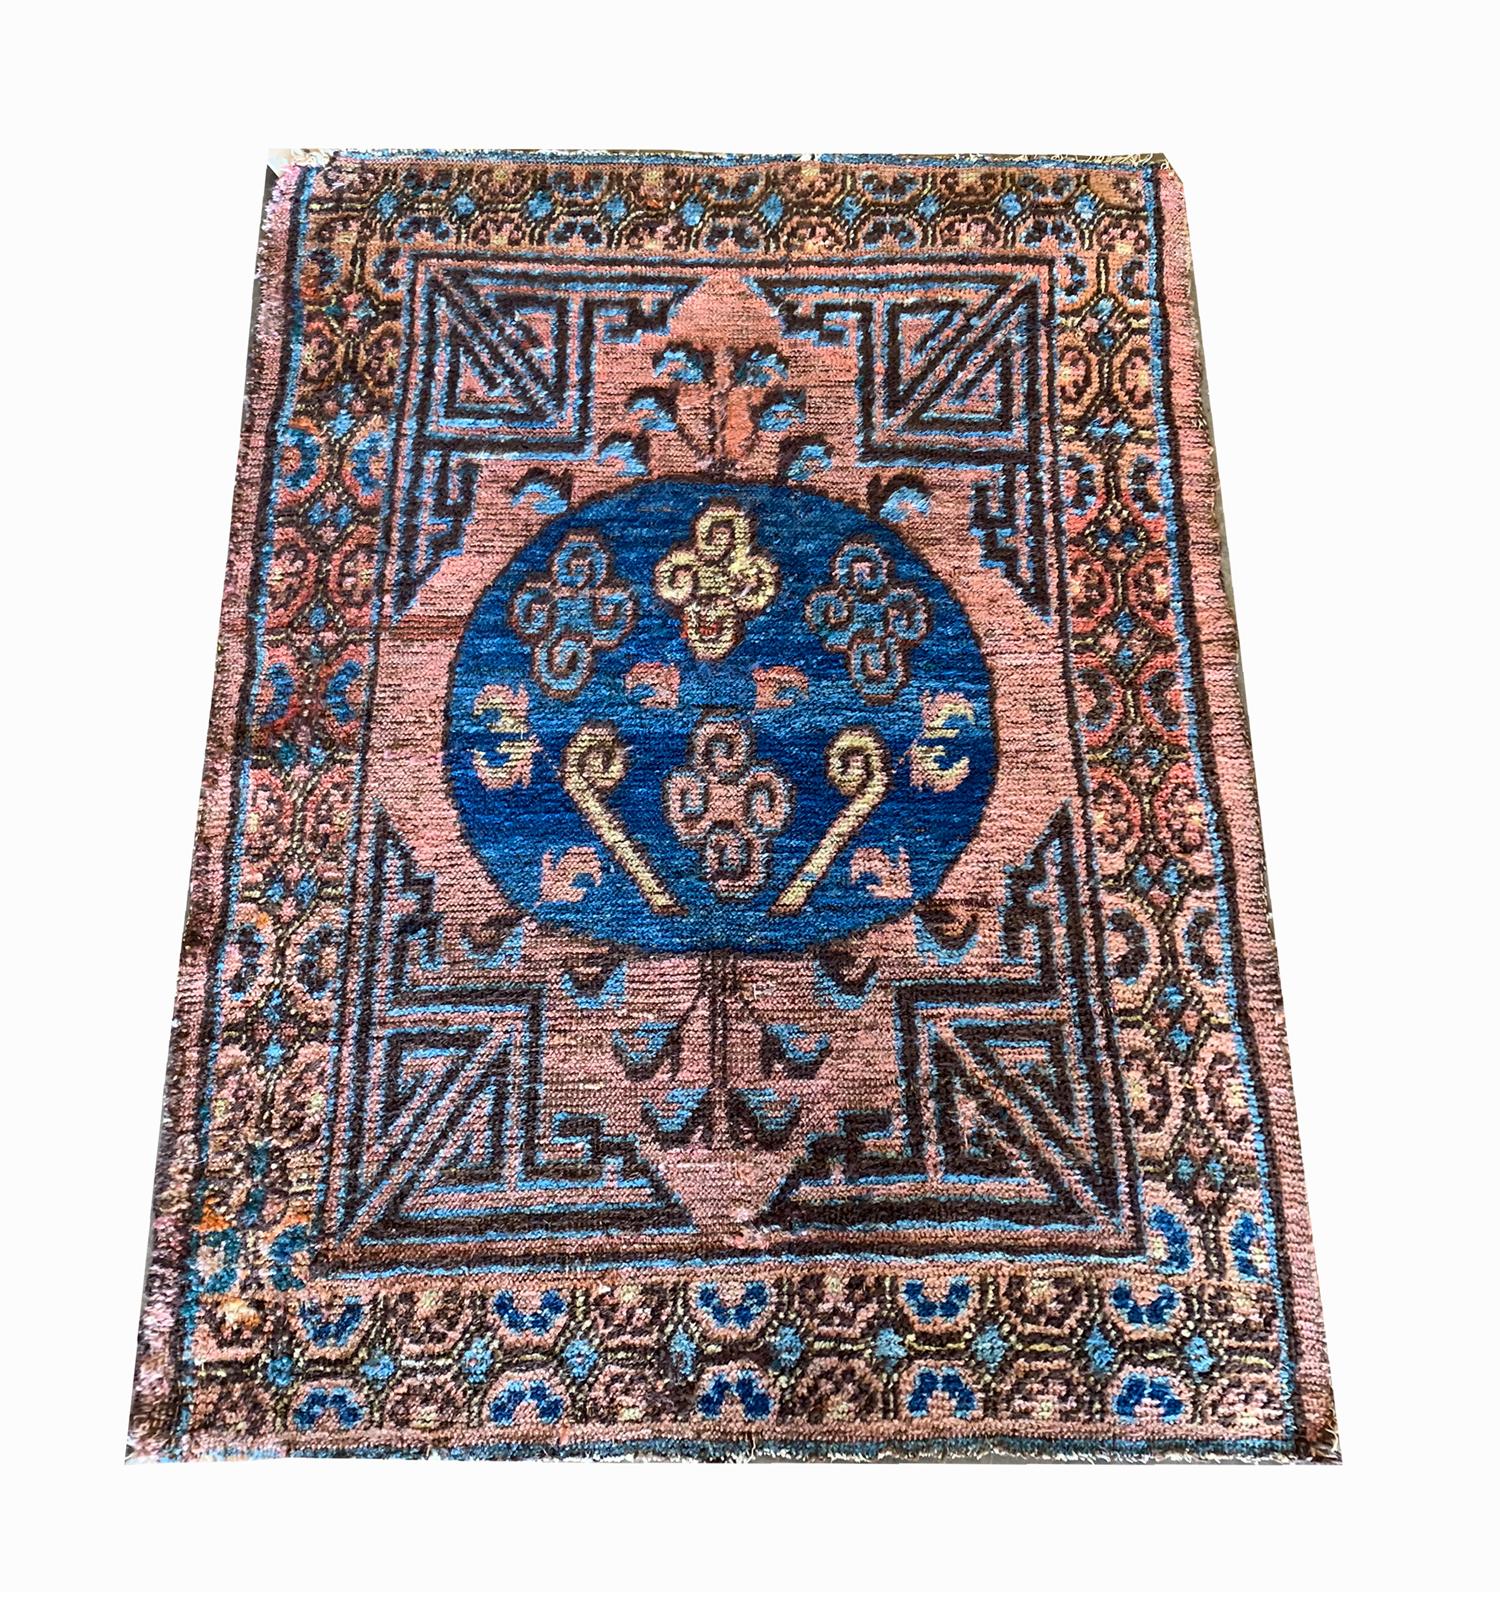 Dieser einzigartige kleine Kohtan-Teppich wurde in den 1900er Jahren von Hand gewebt. Khotan-Teppiche wurden in Ostturkestan, einem Gebiet im heutigen Westchina, hergestellt. Khotan war einst eine Wüstenoase an der Seidenstraße und produzierte kühne